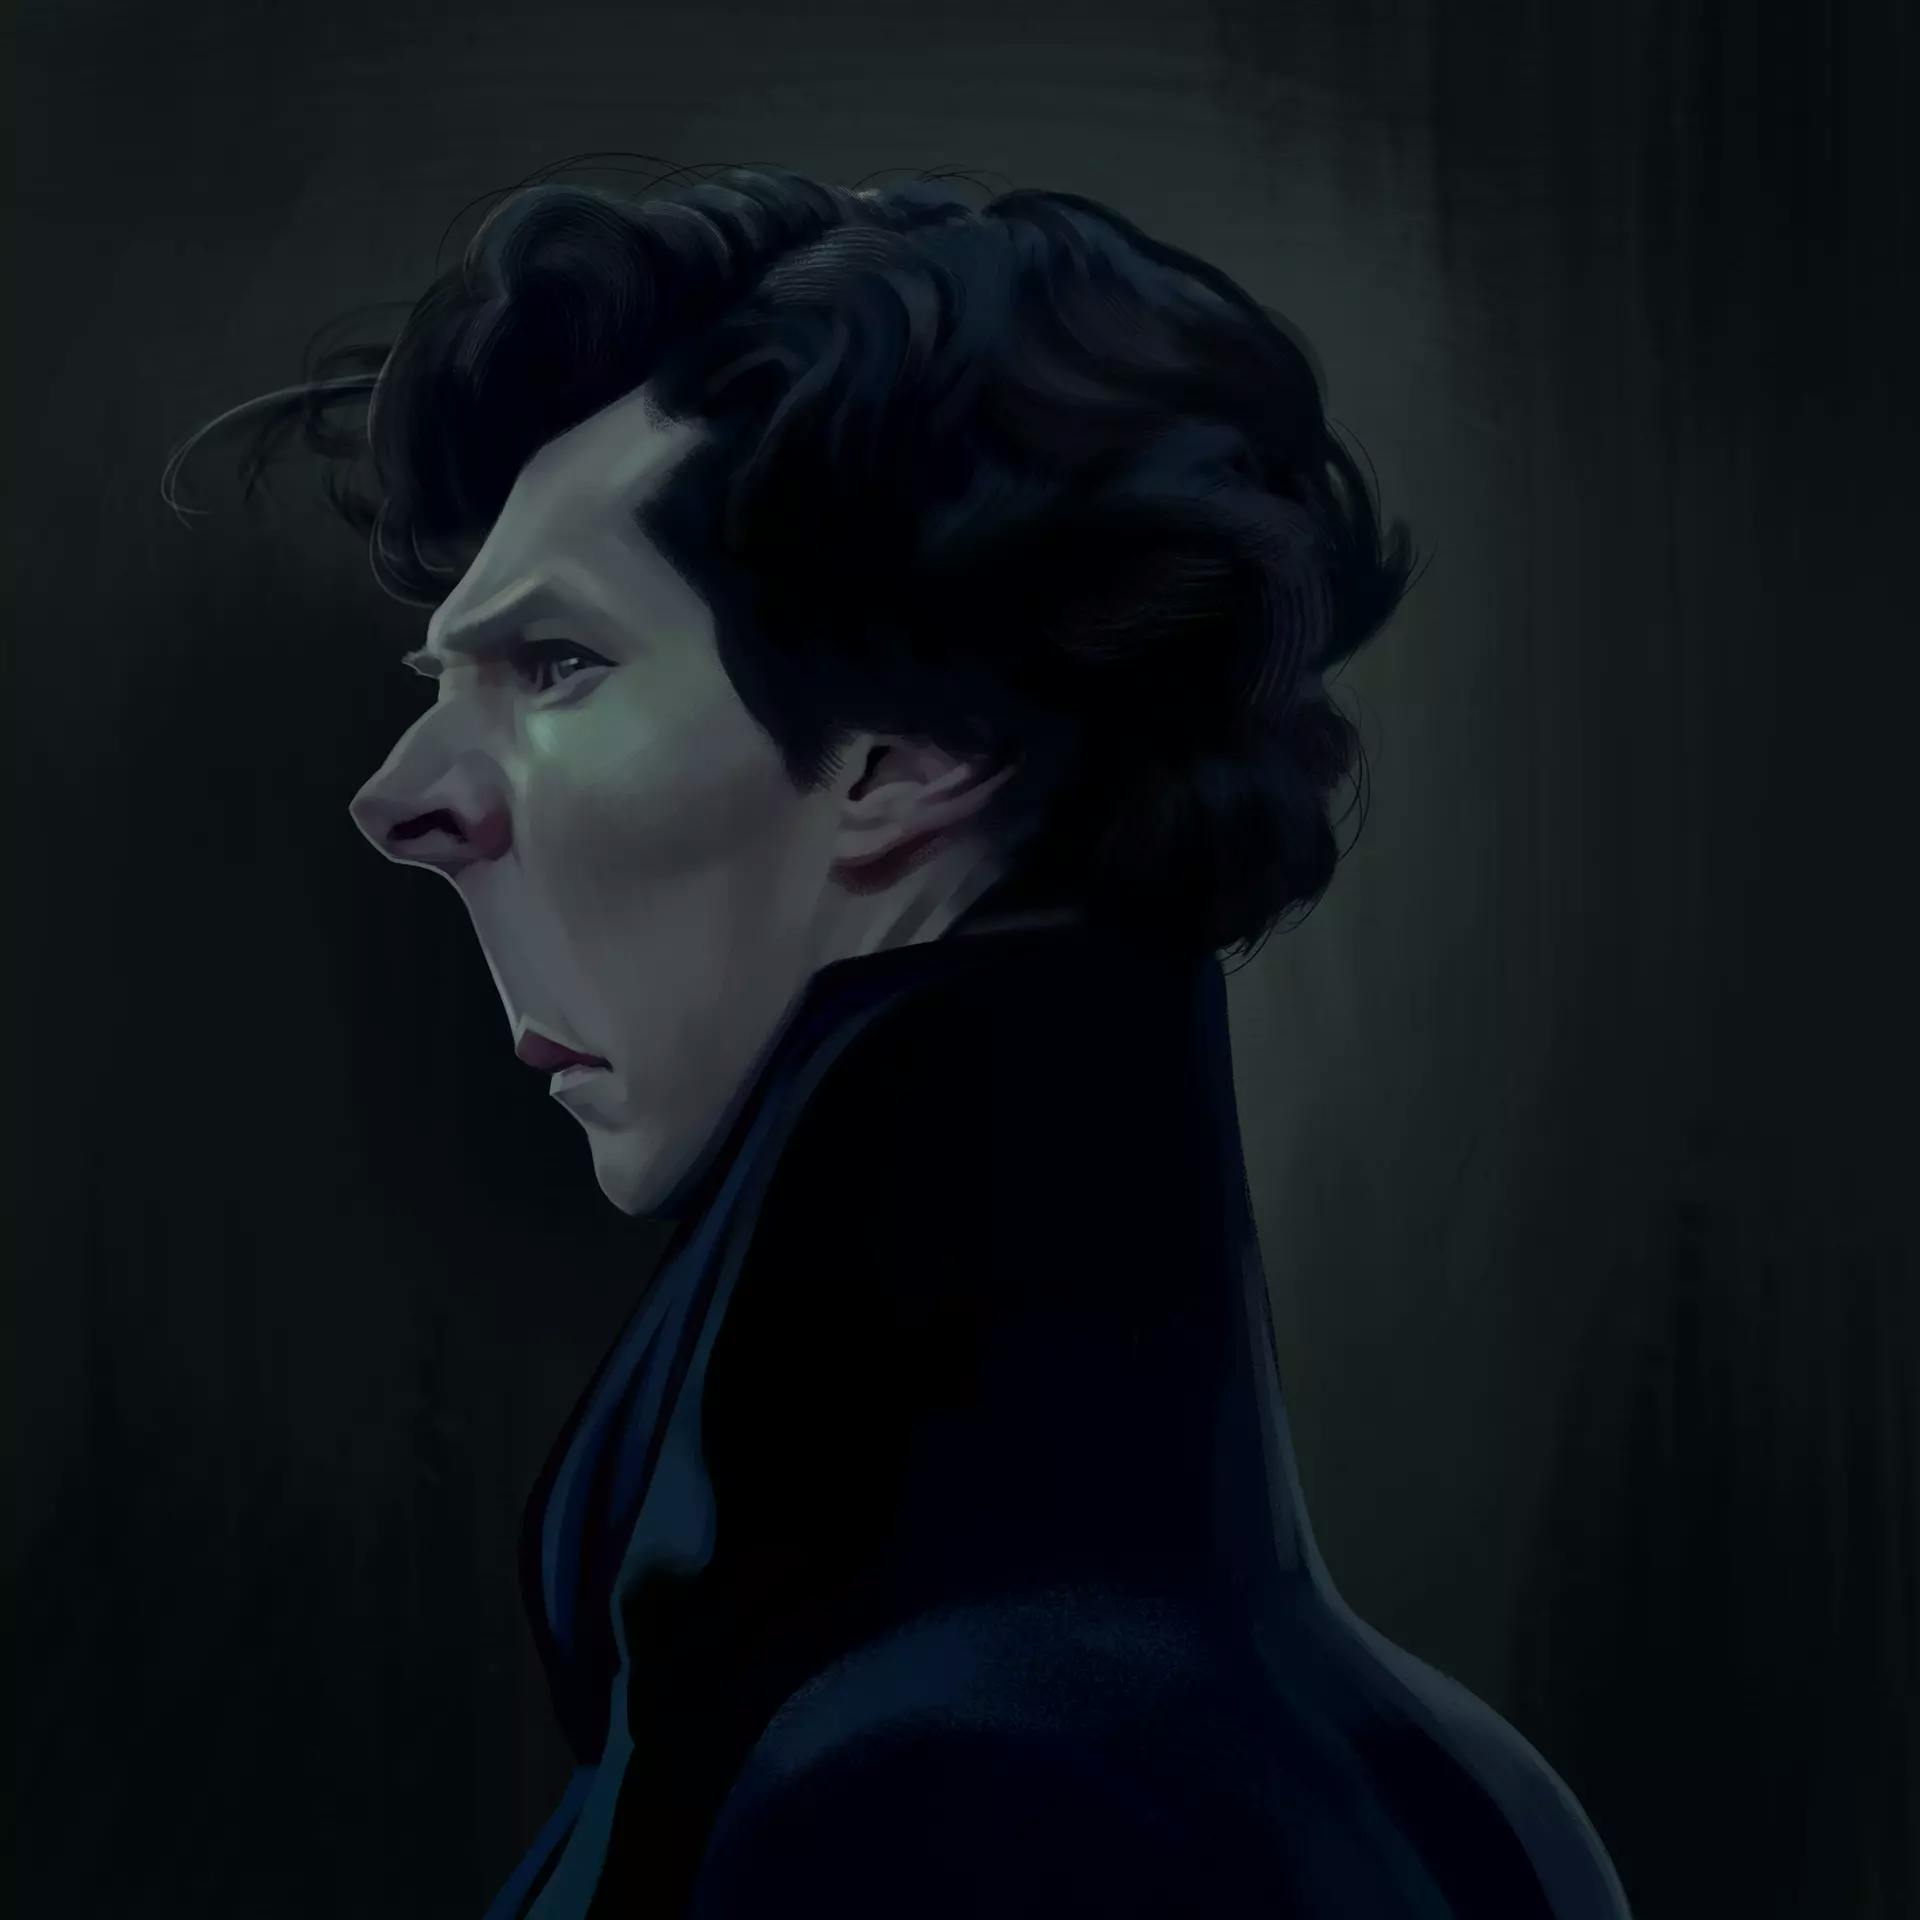 A caricature of Benedict Cumberbatch